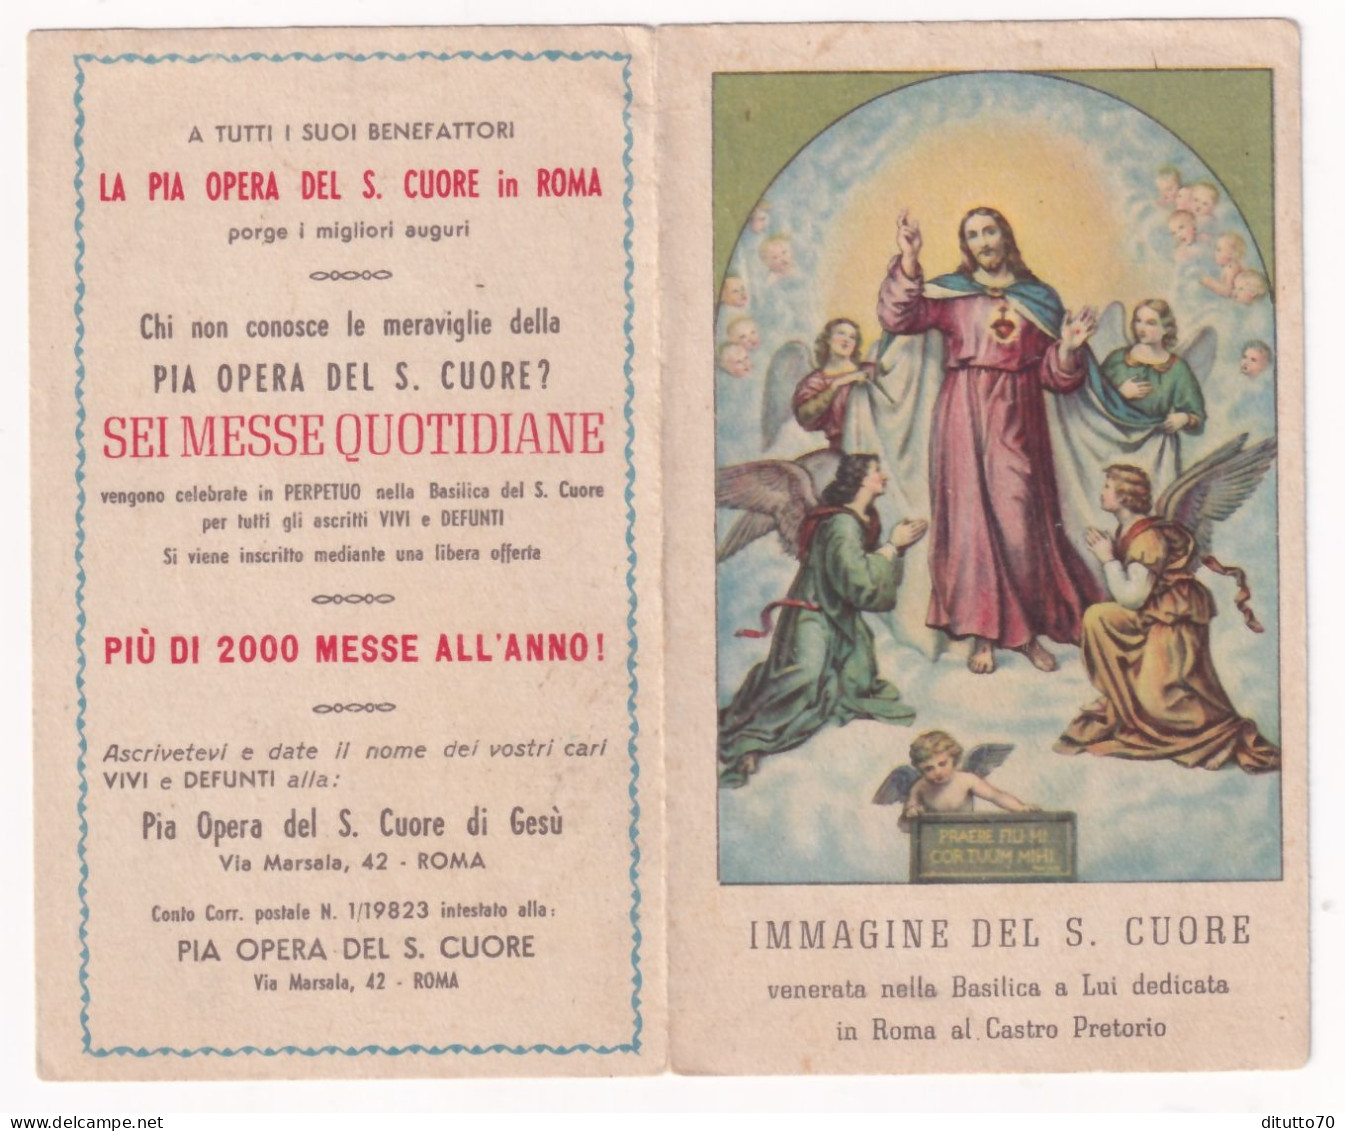 Calendarietto - Immagine Del S.cuore Venerata Nella Basilica A Lui Dedicata In Roma Al Castro Pretorio - Anno 1947 - Small : 1941-60